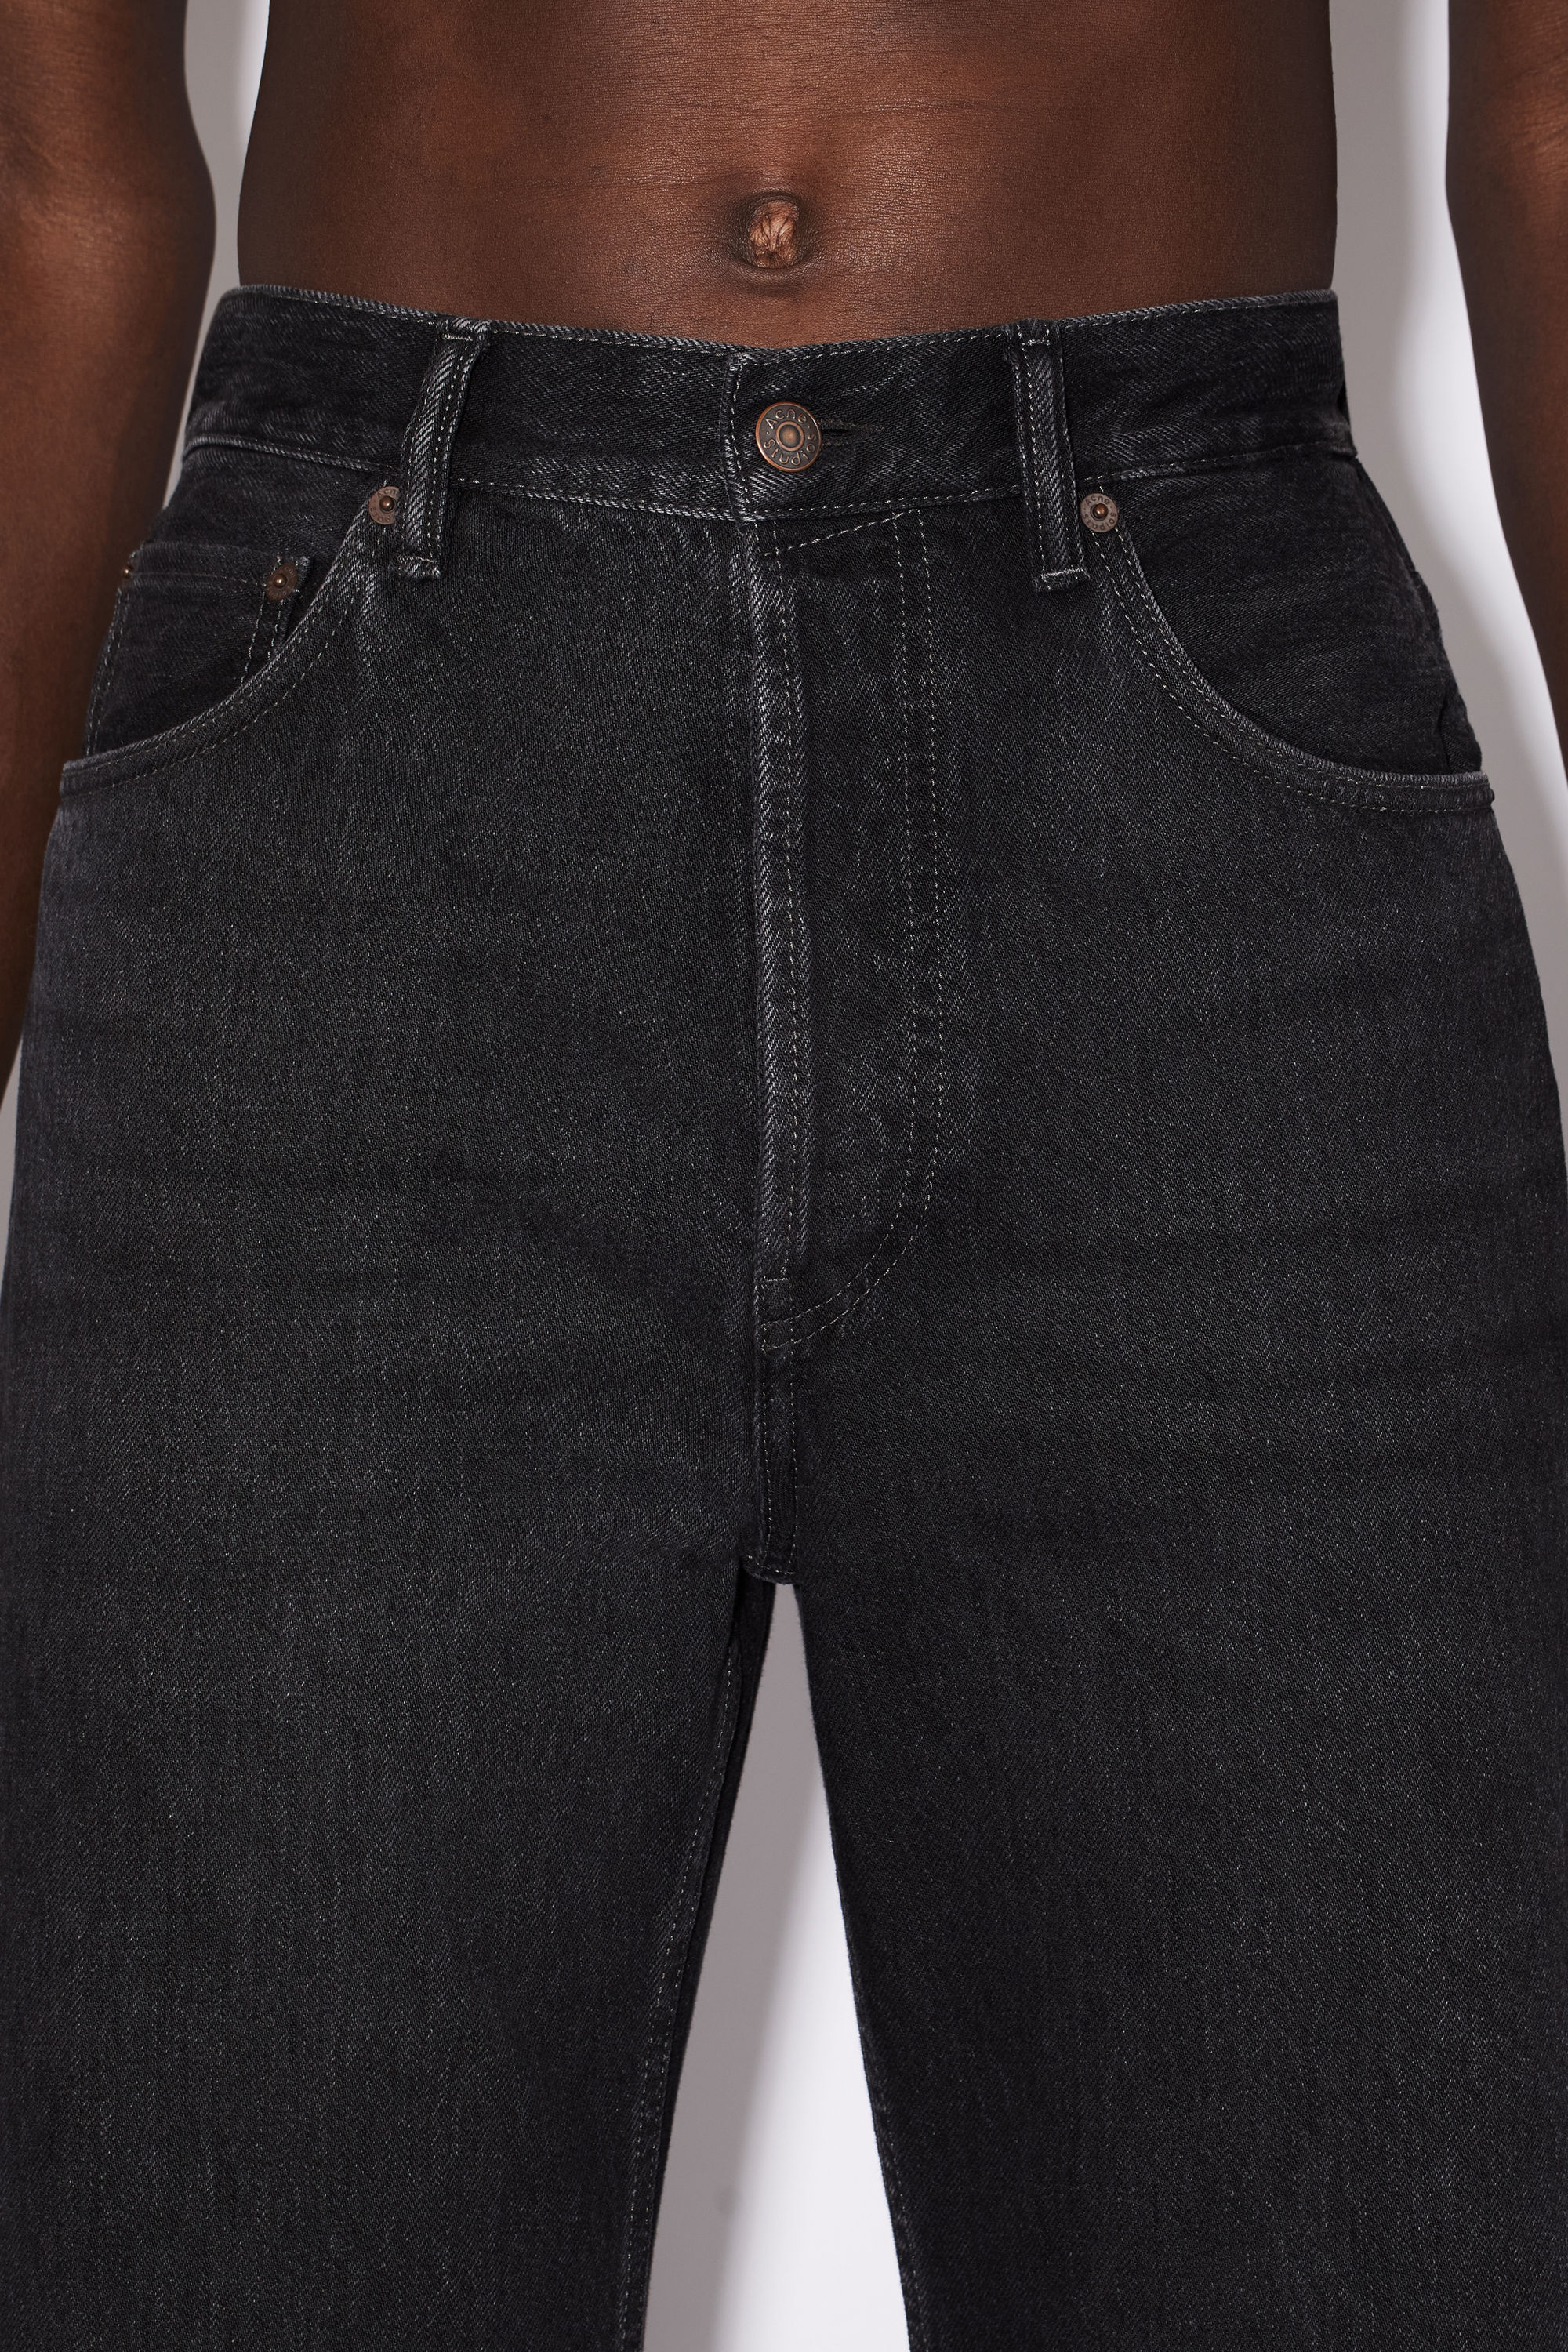 Acne Studios - Loose fit jeans - 2021M - Black